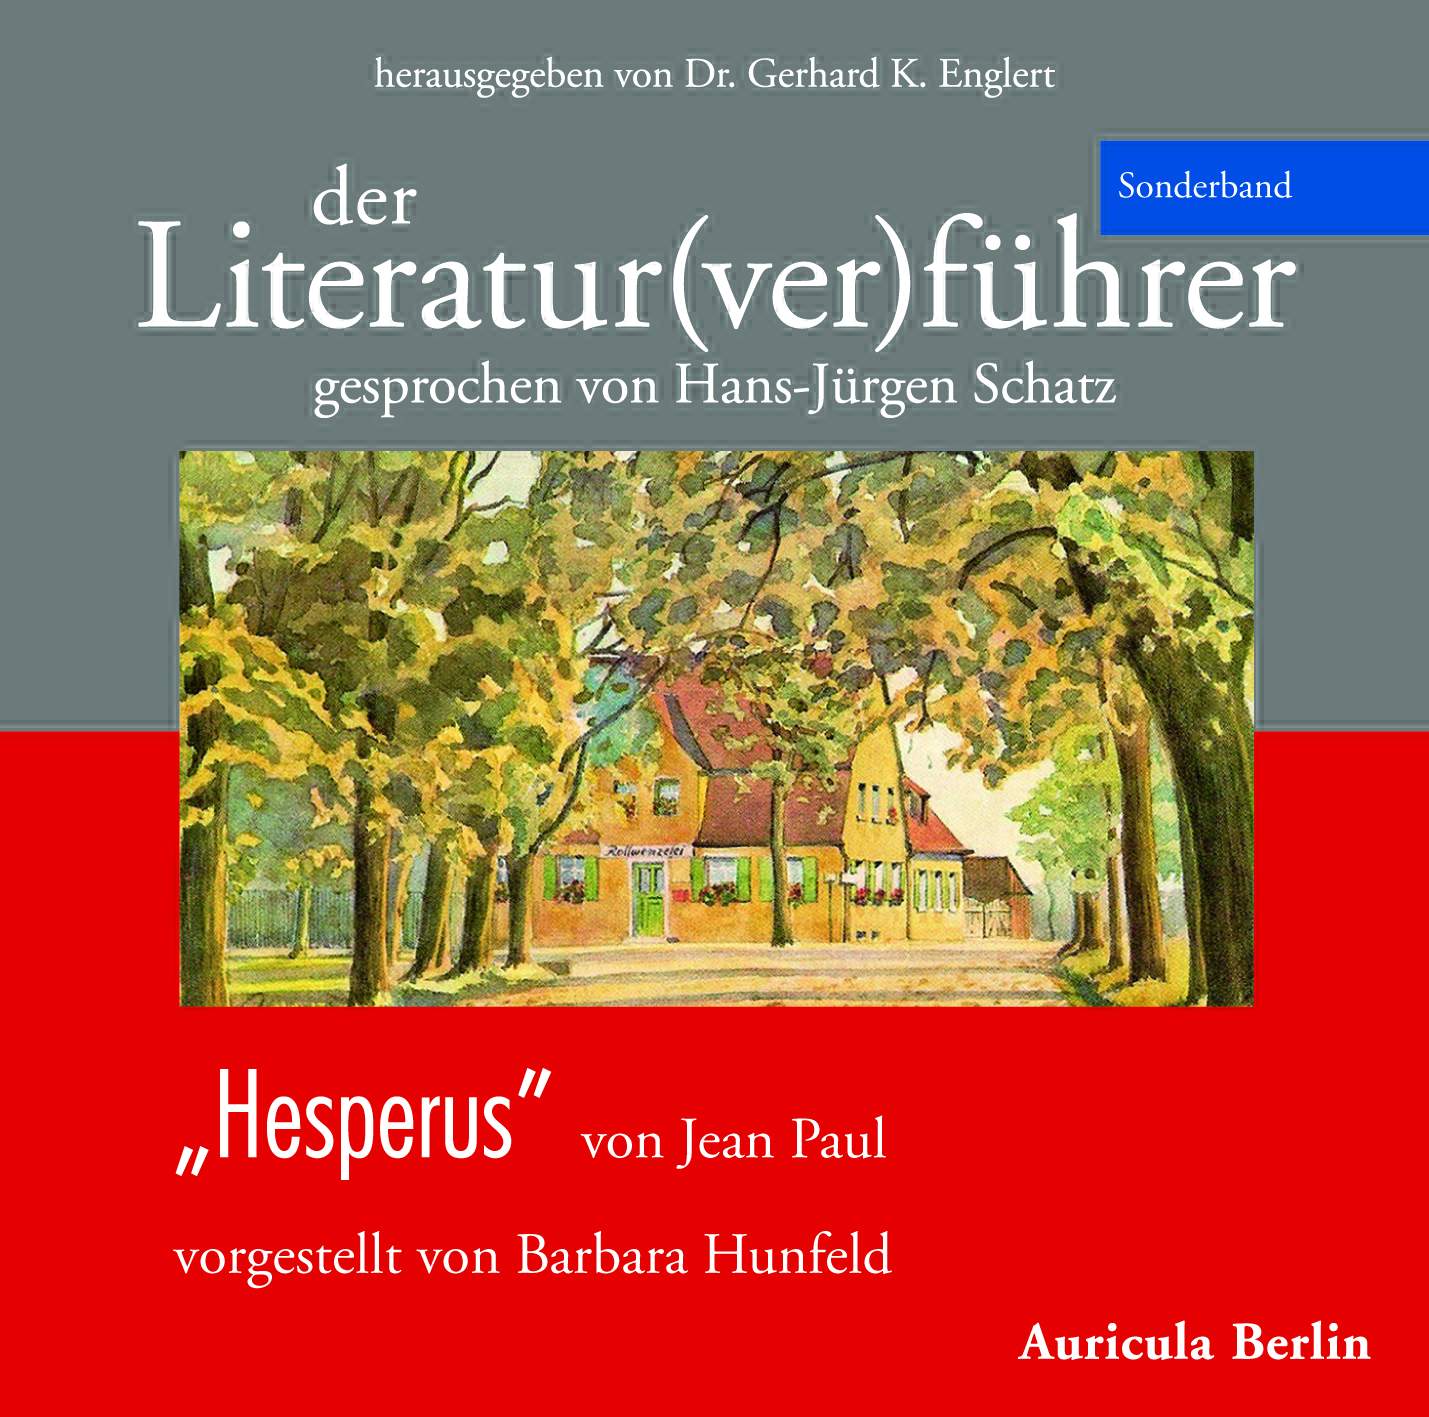 Der Literatur(ver)führer, Sonderband Hesperus